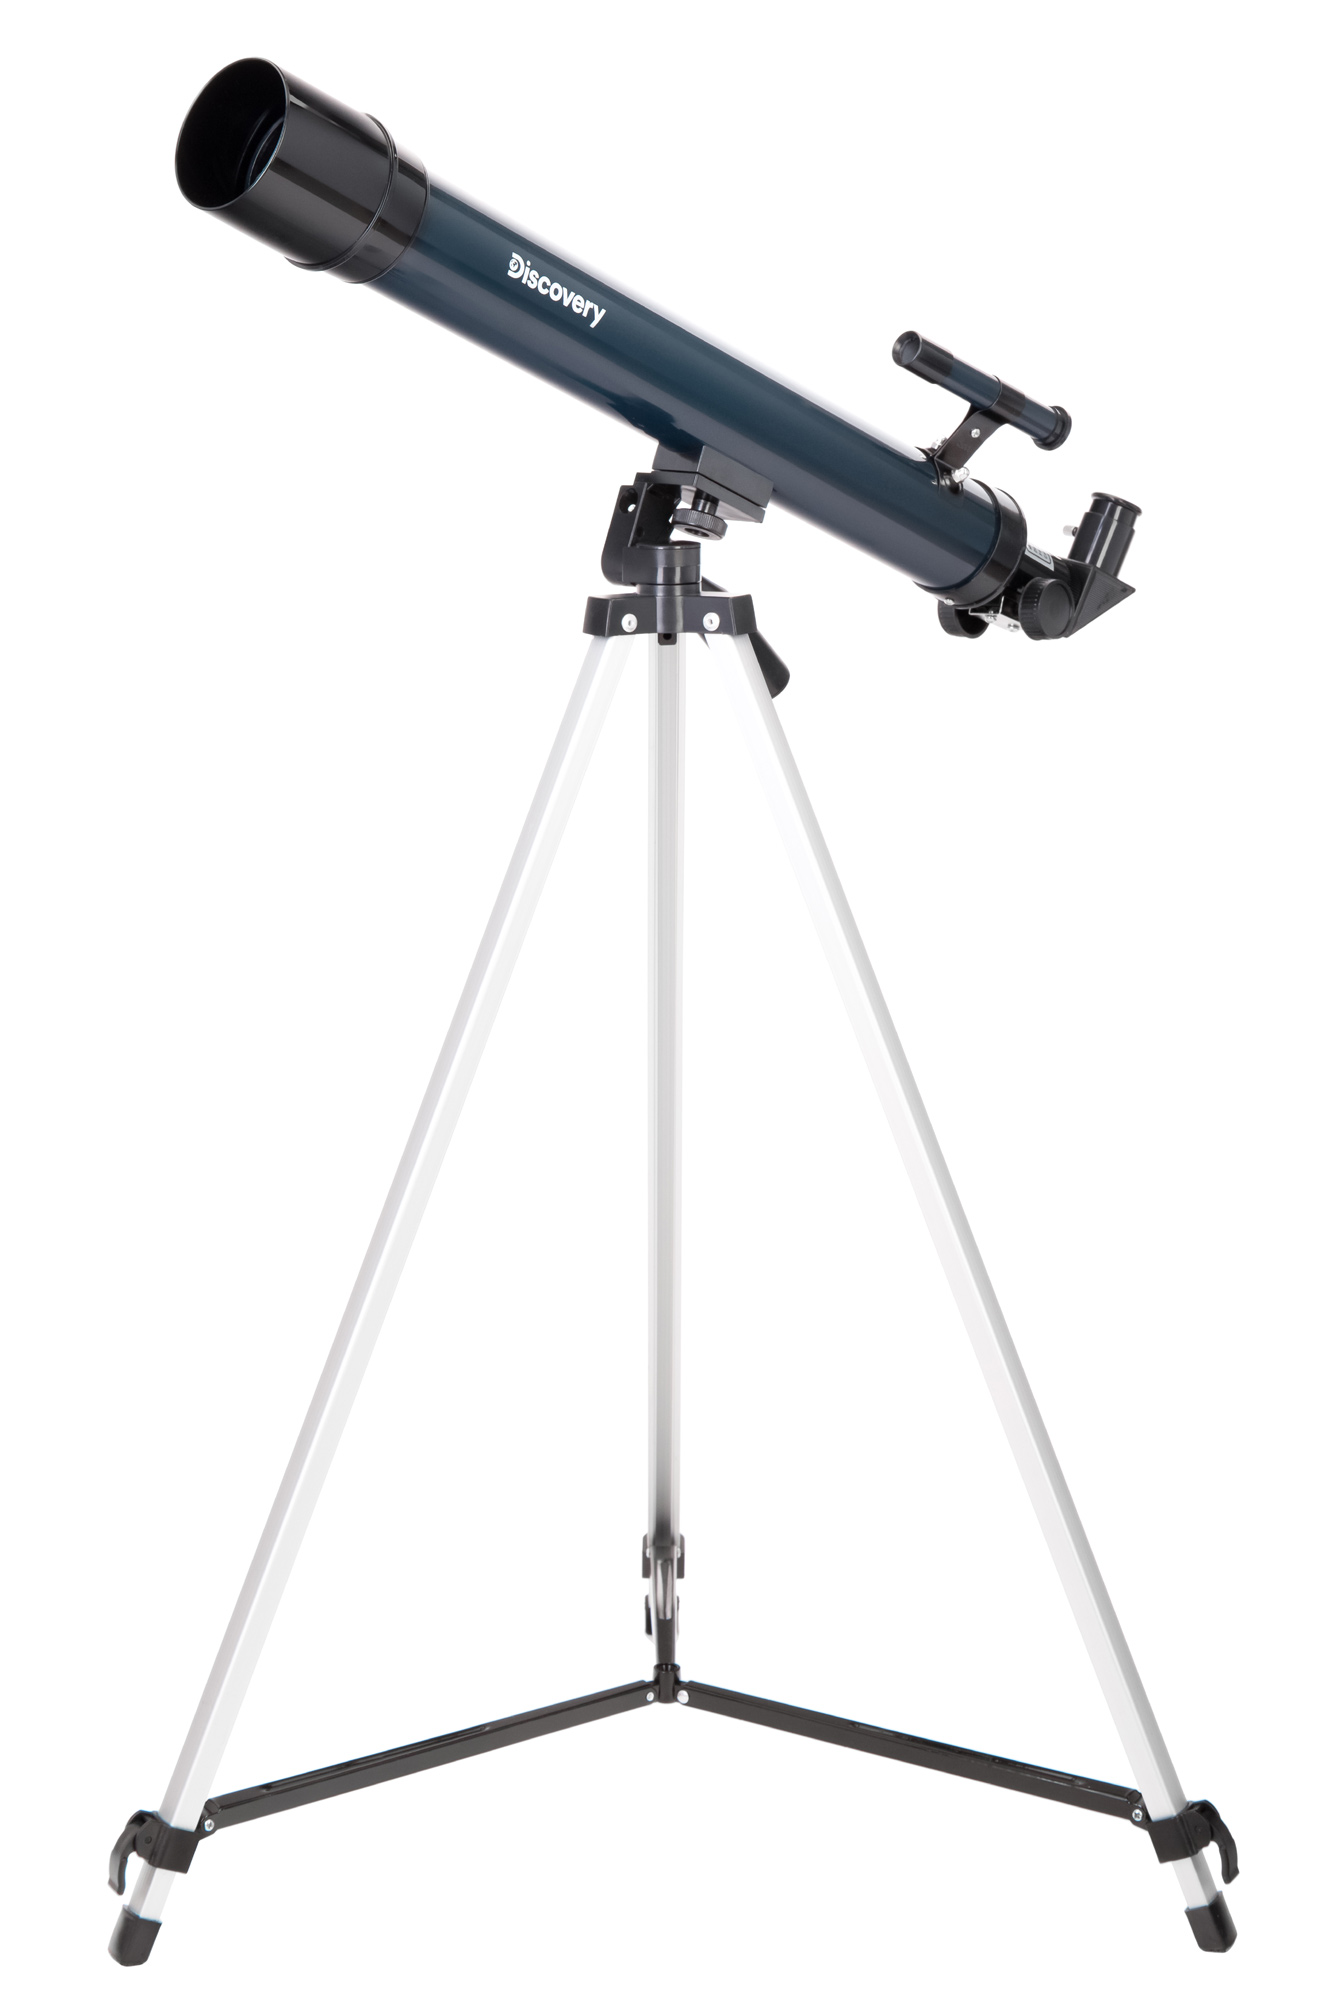 Набор Discovery Scope 3 с книгой Набор из трех оптических приборов: телескопа, микроскопа и бинокля. В комплекте более 30 аксессуаров и познавательная книга о космосе